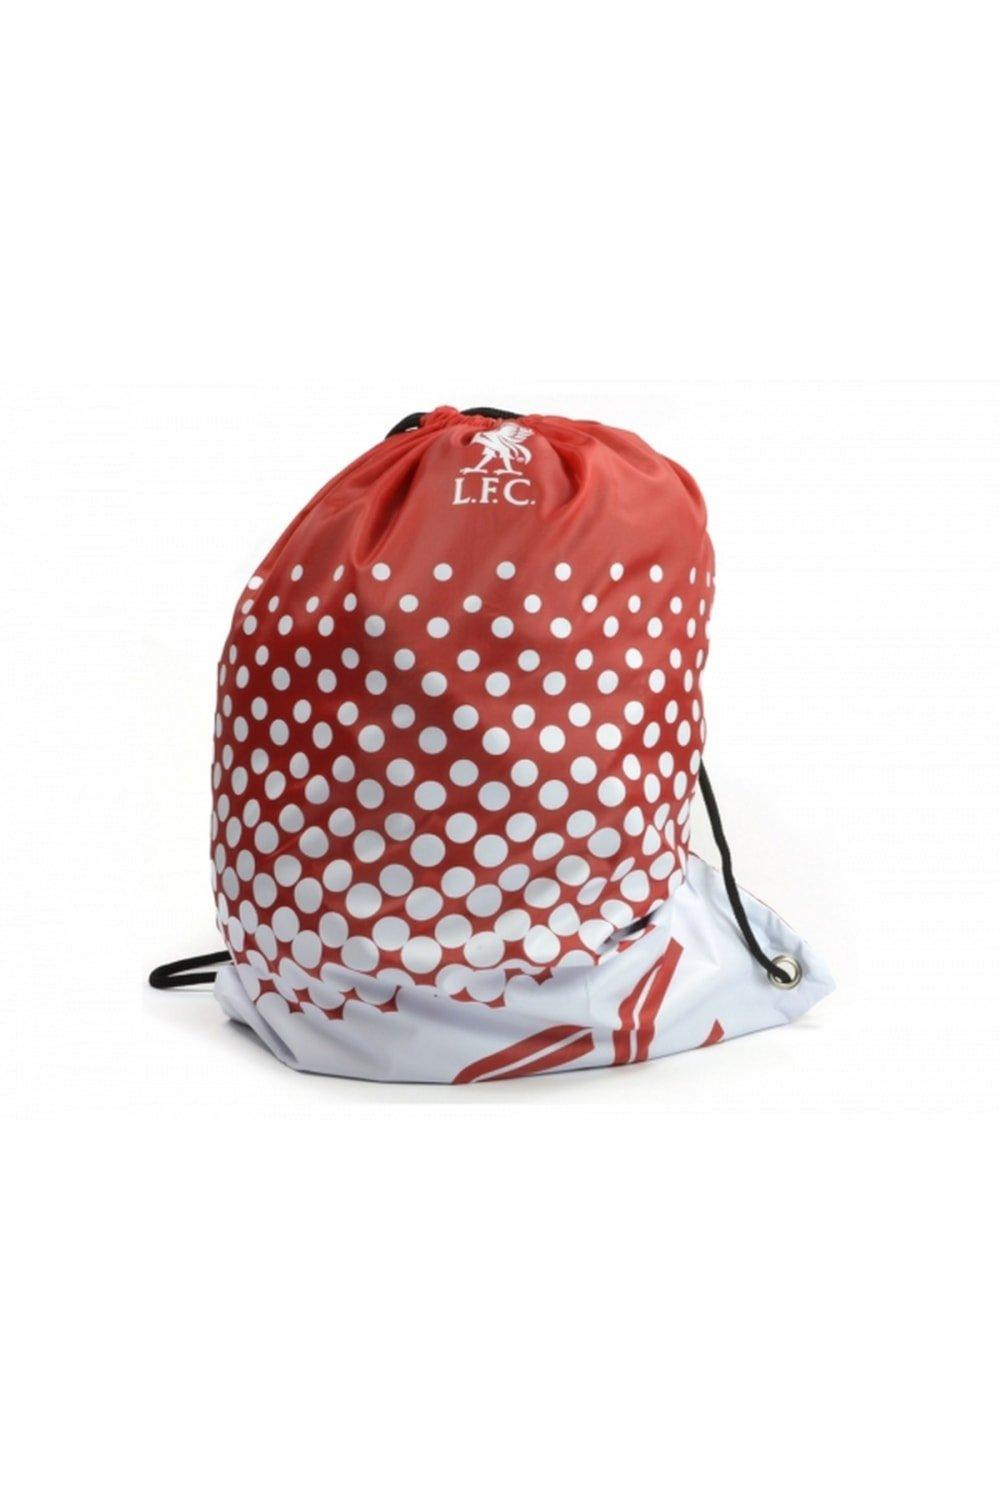 Официальная спортивная сумка Football Fade Design Liverpool FC, красный